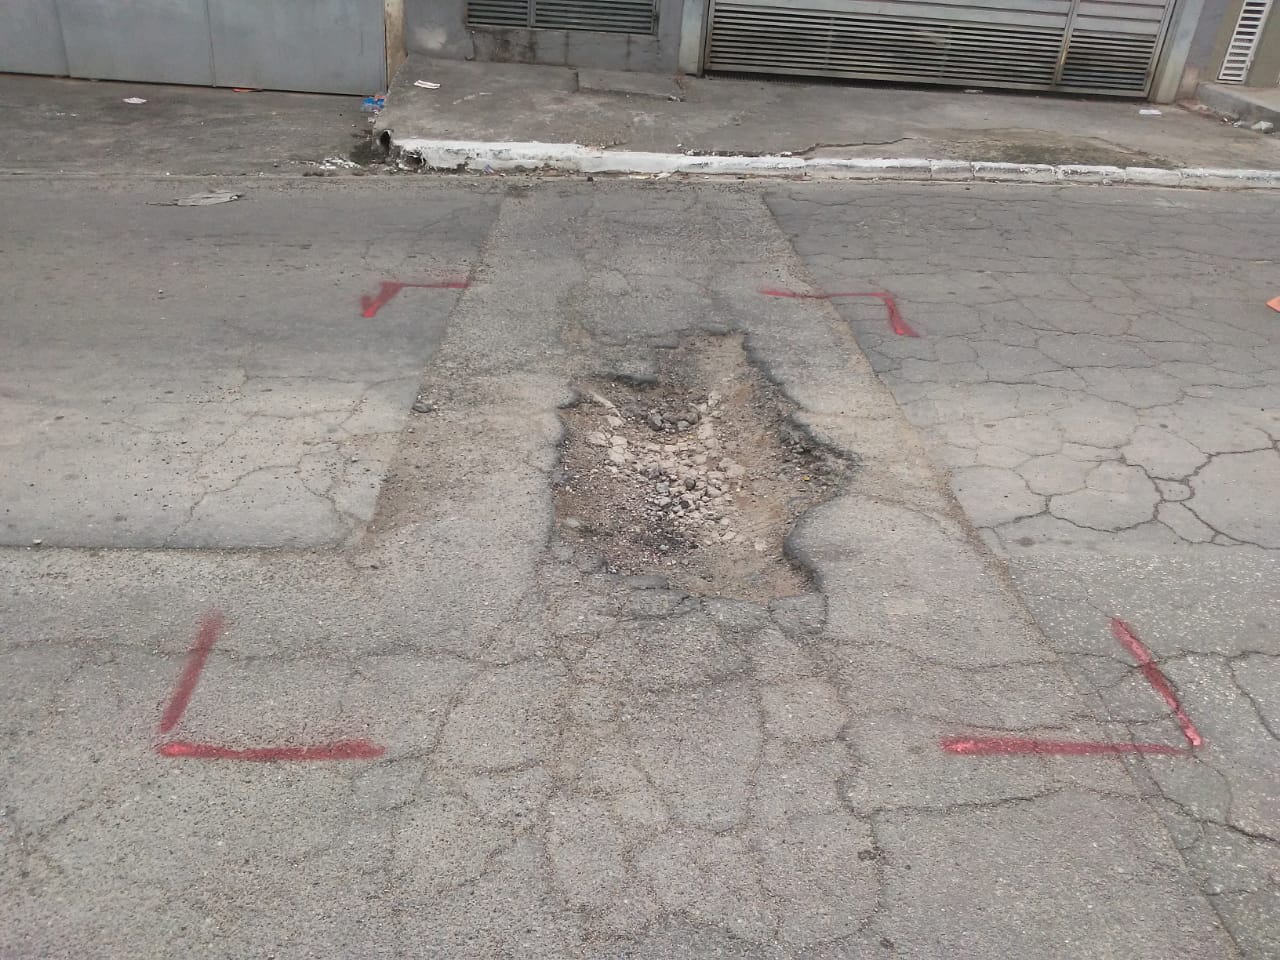 #PraCegoVer - Na primeira foto, o buraco no centro da rua, com os limites demarcados. Na foto seguinte, o buraco já tapado. Ao fundo, um rolo compressor.